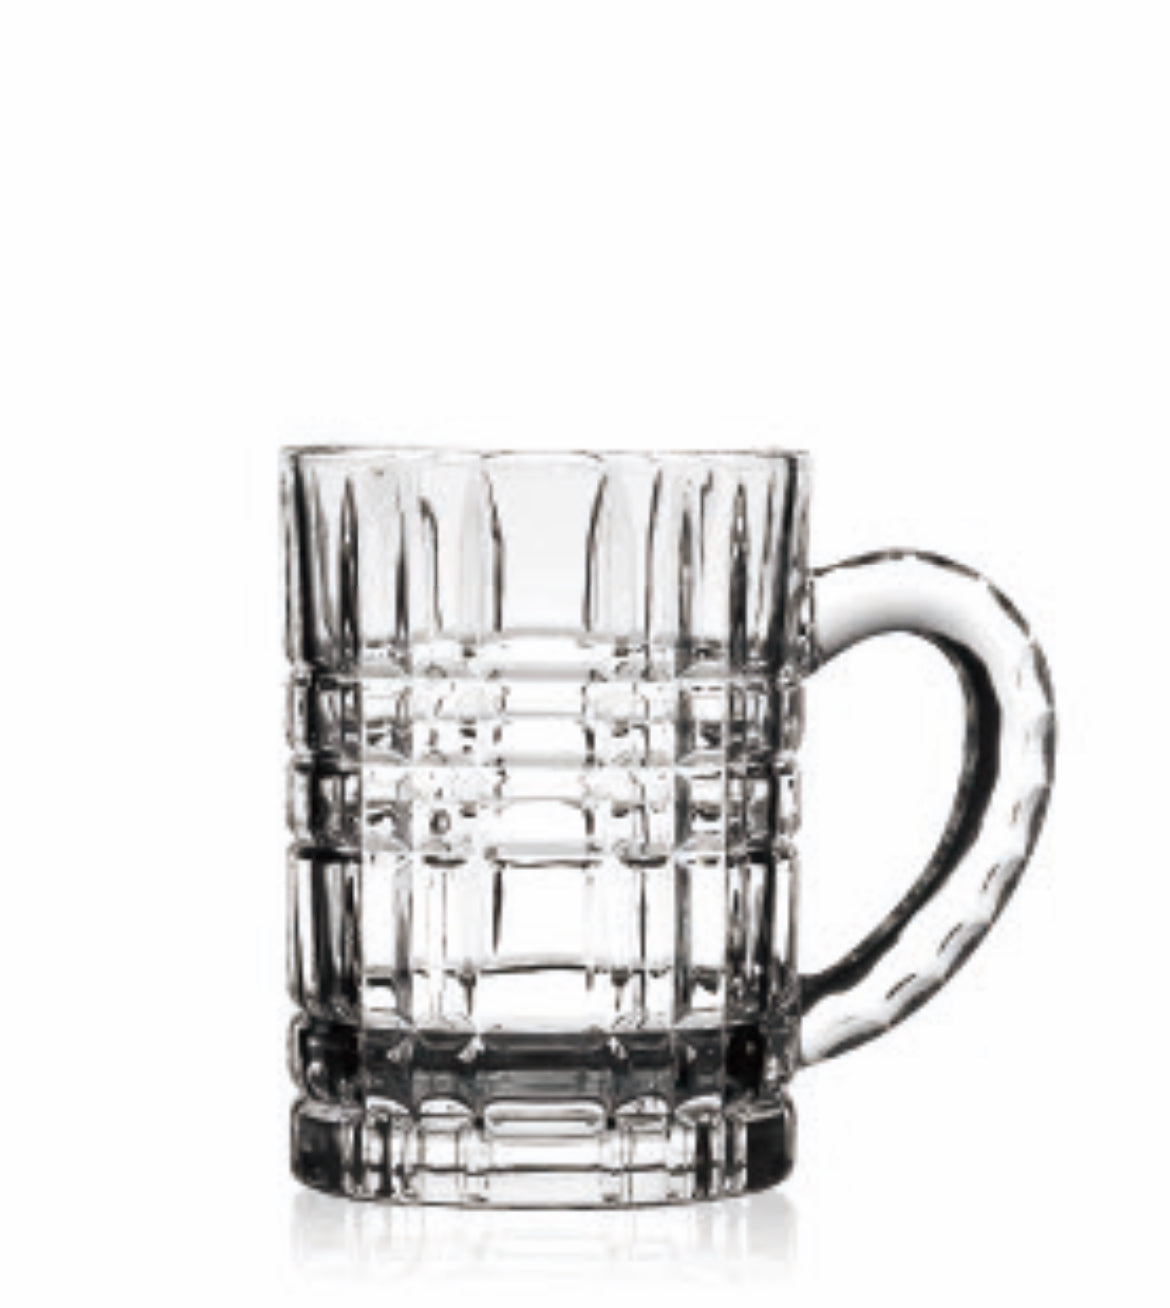 6.6 oz (195ml) Tea Glass - BJB503D